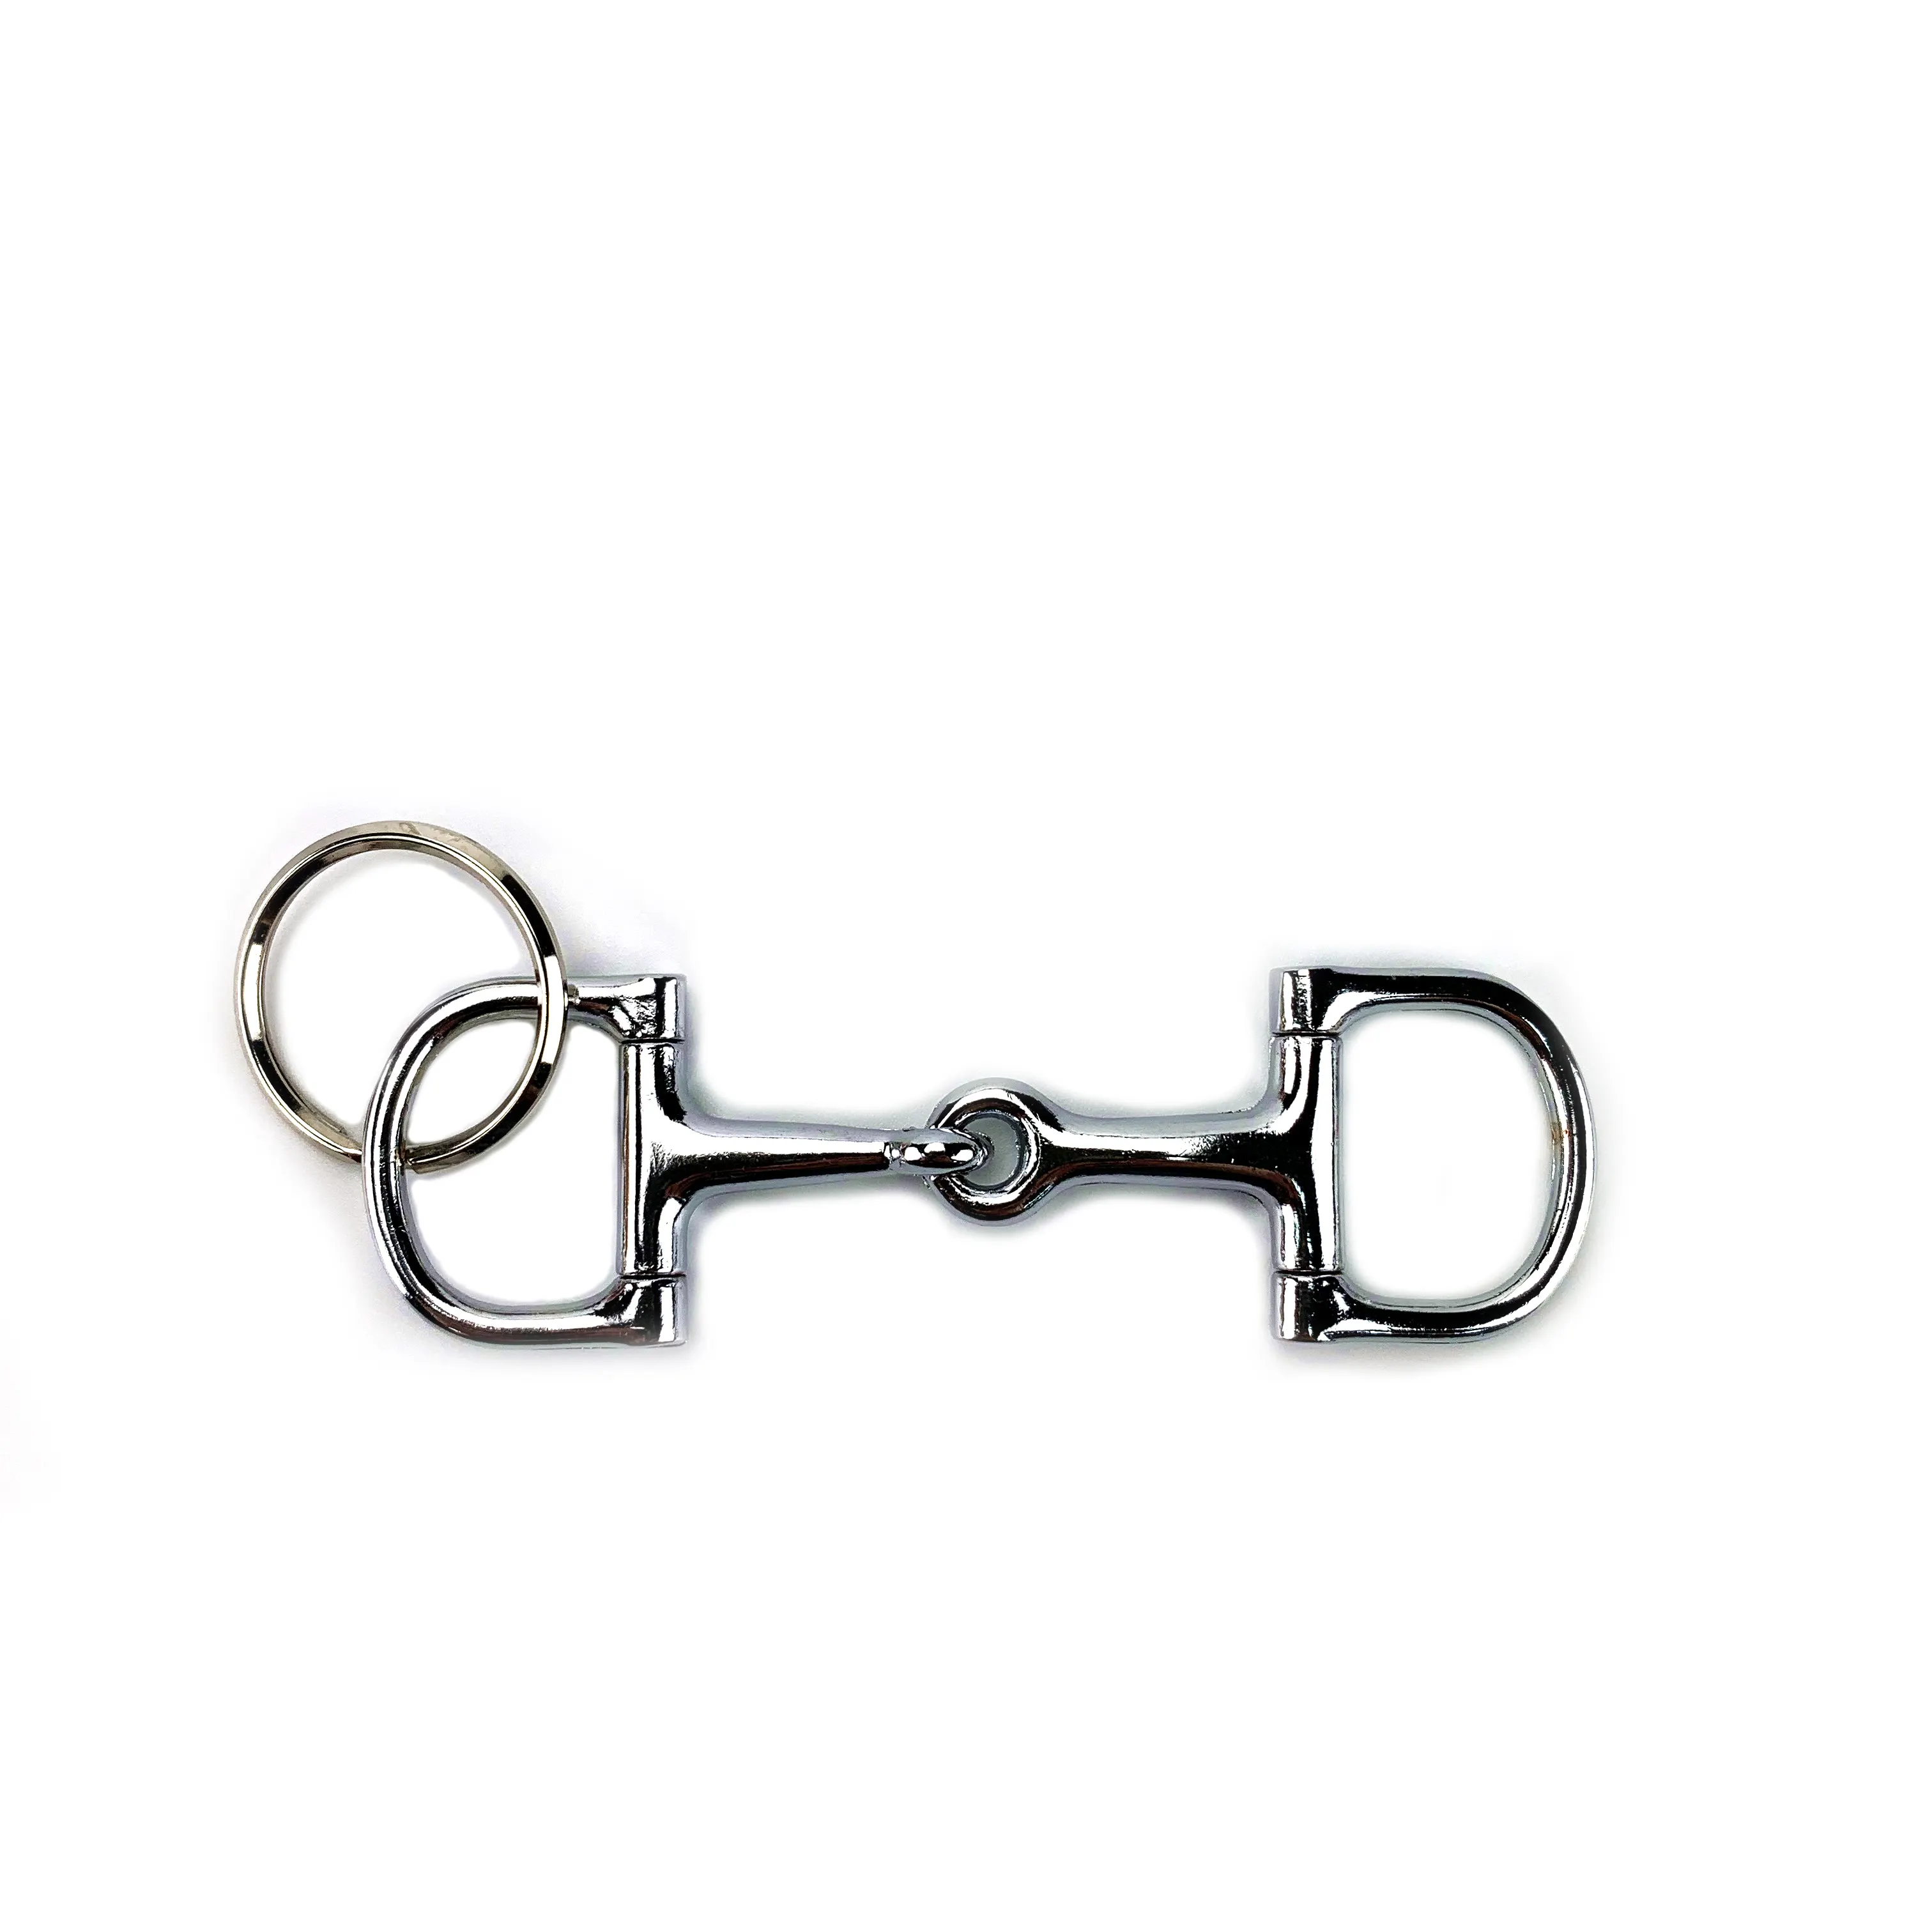 Metal Gift Horse Tack Key Ring Gift